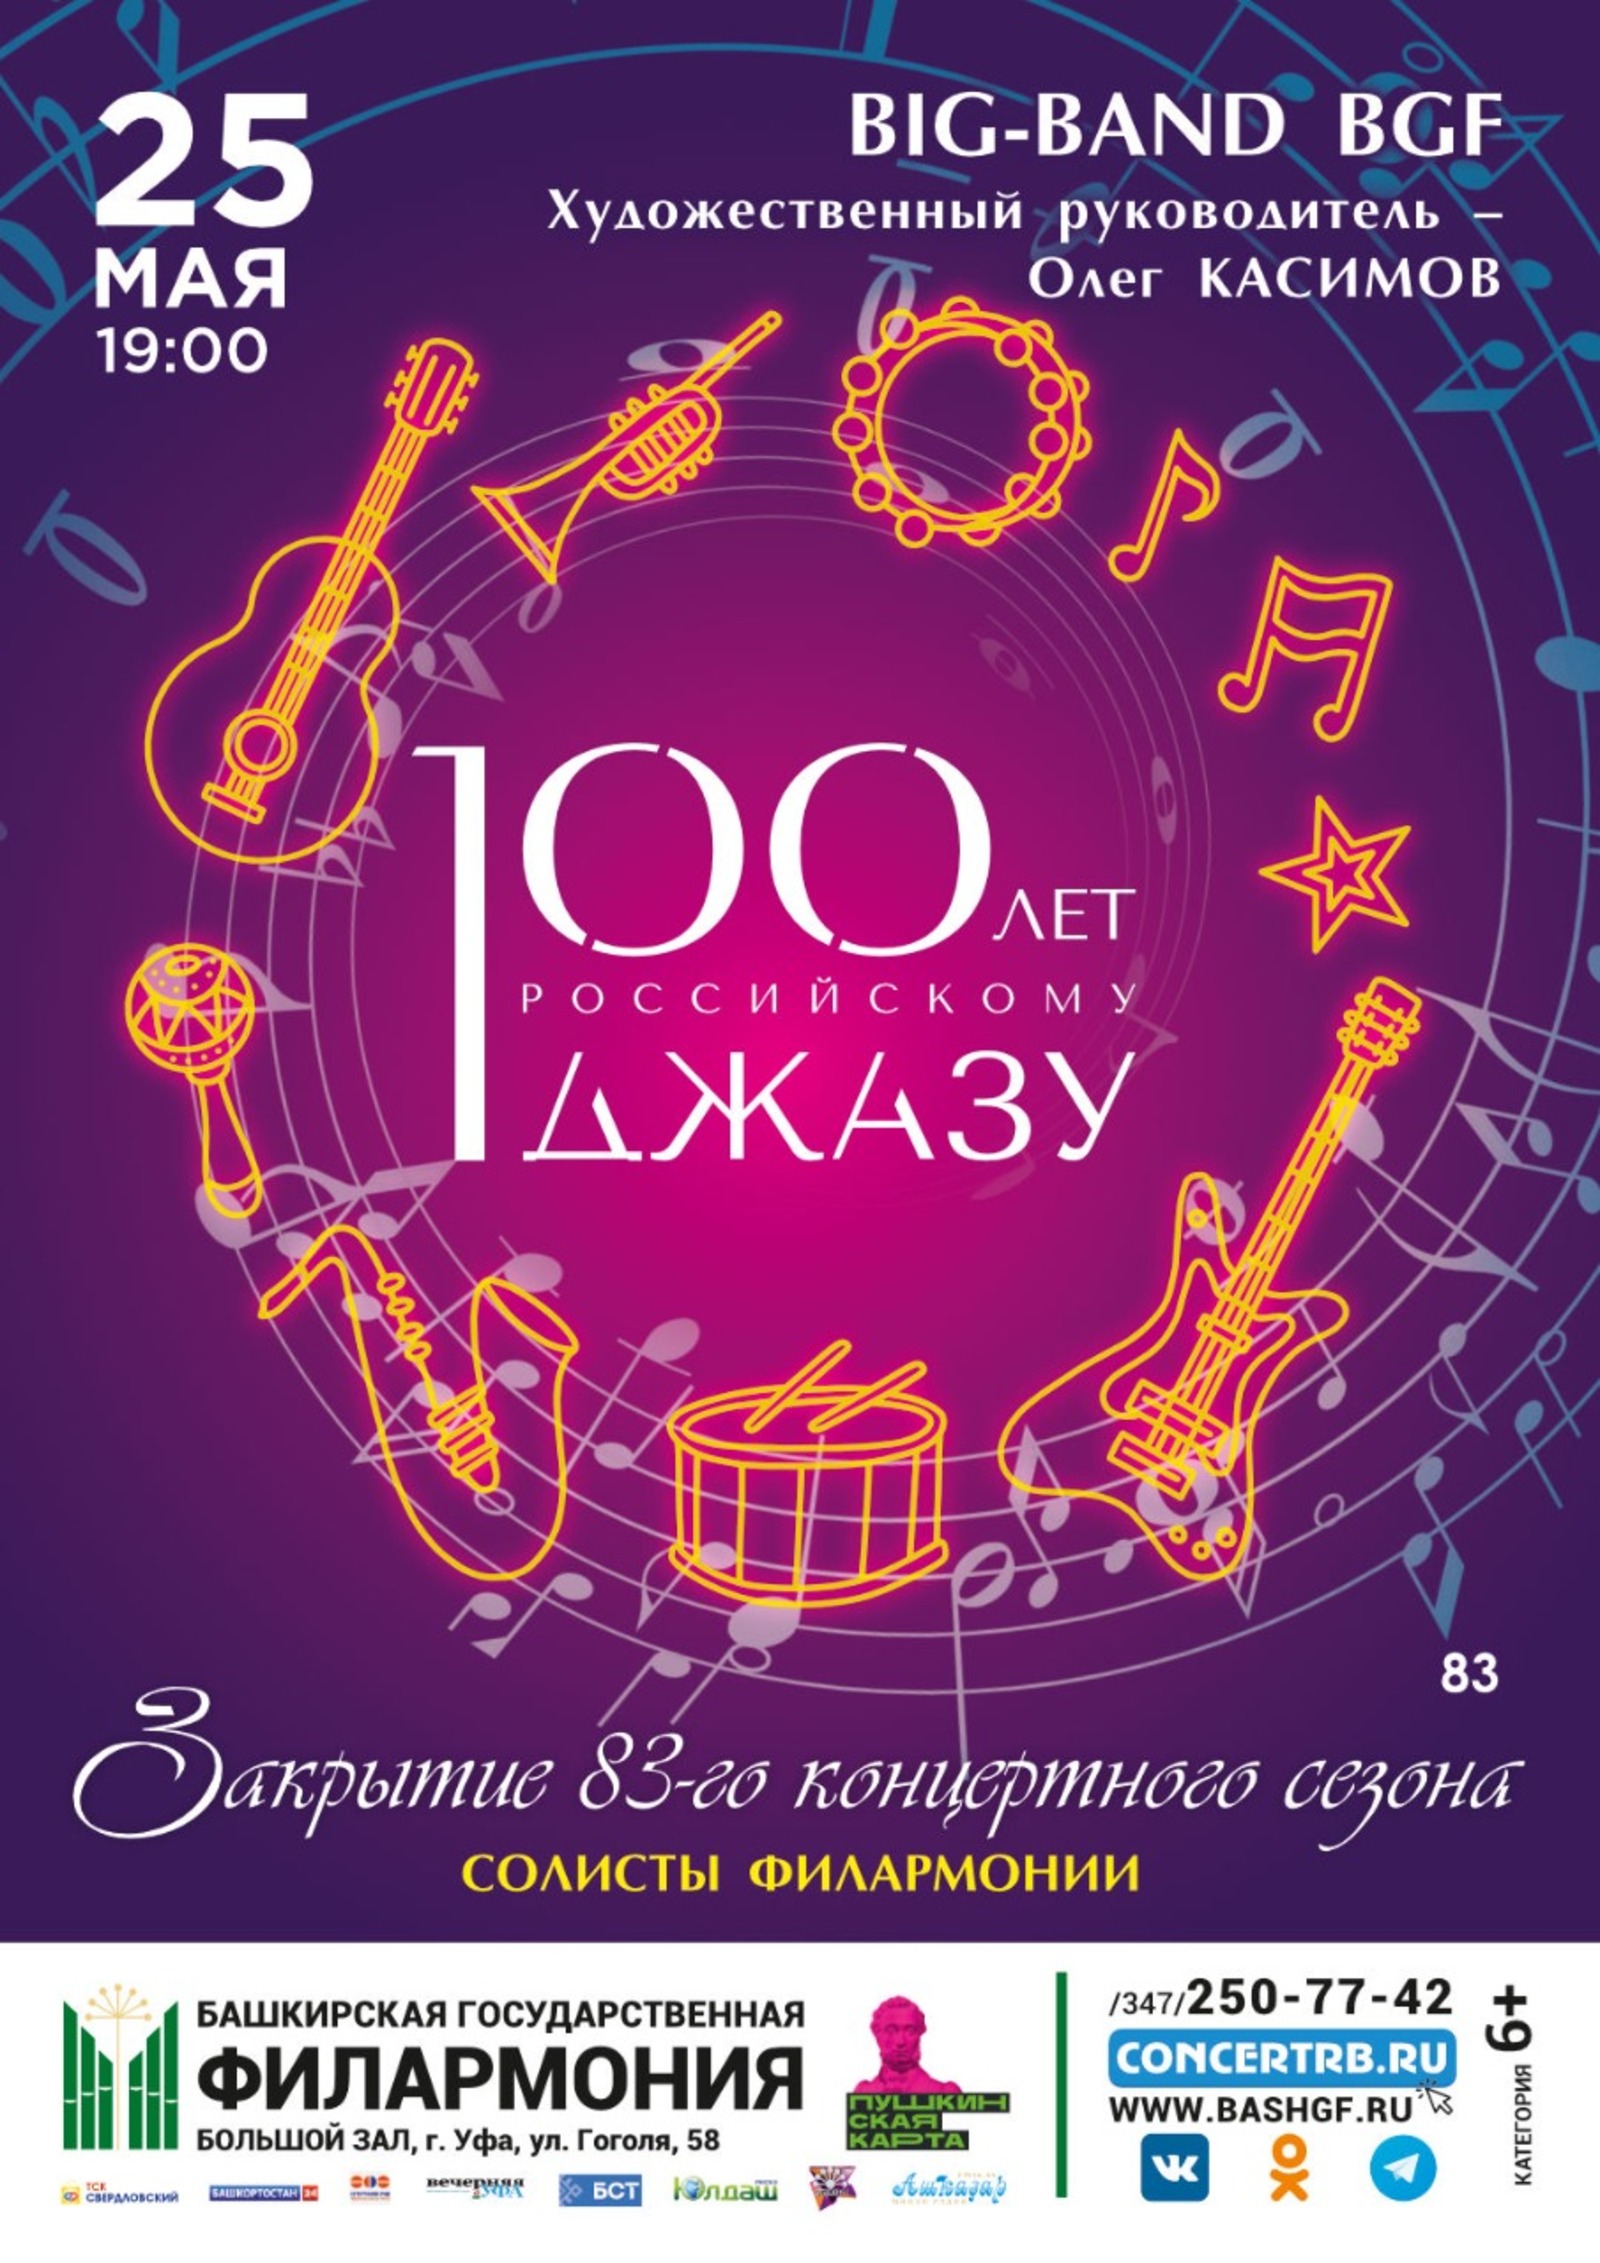 Башкирская государственная филармония закрывает творческий сезон концертной программой «Советская песня в джазе»